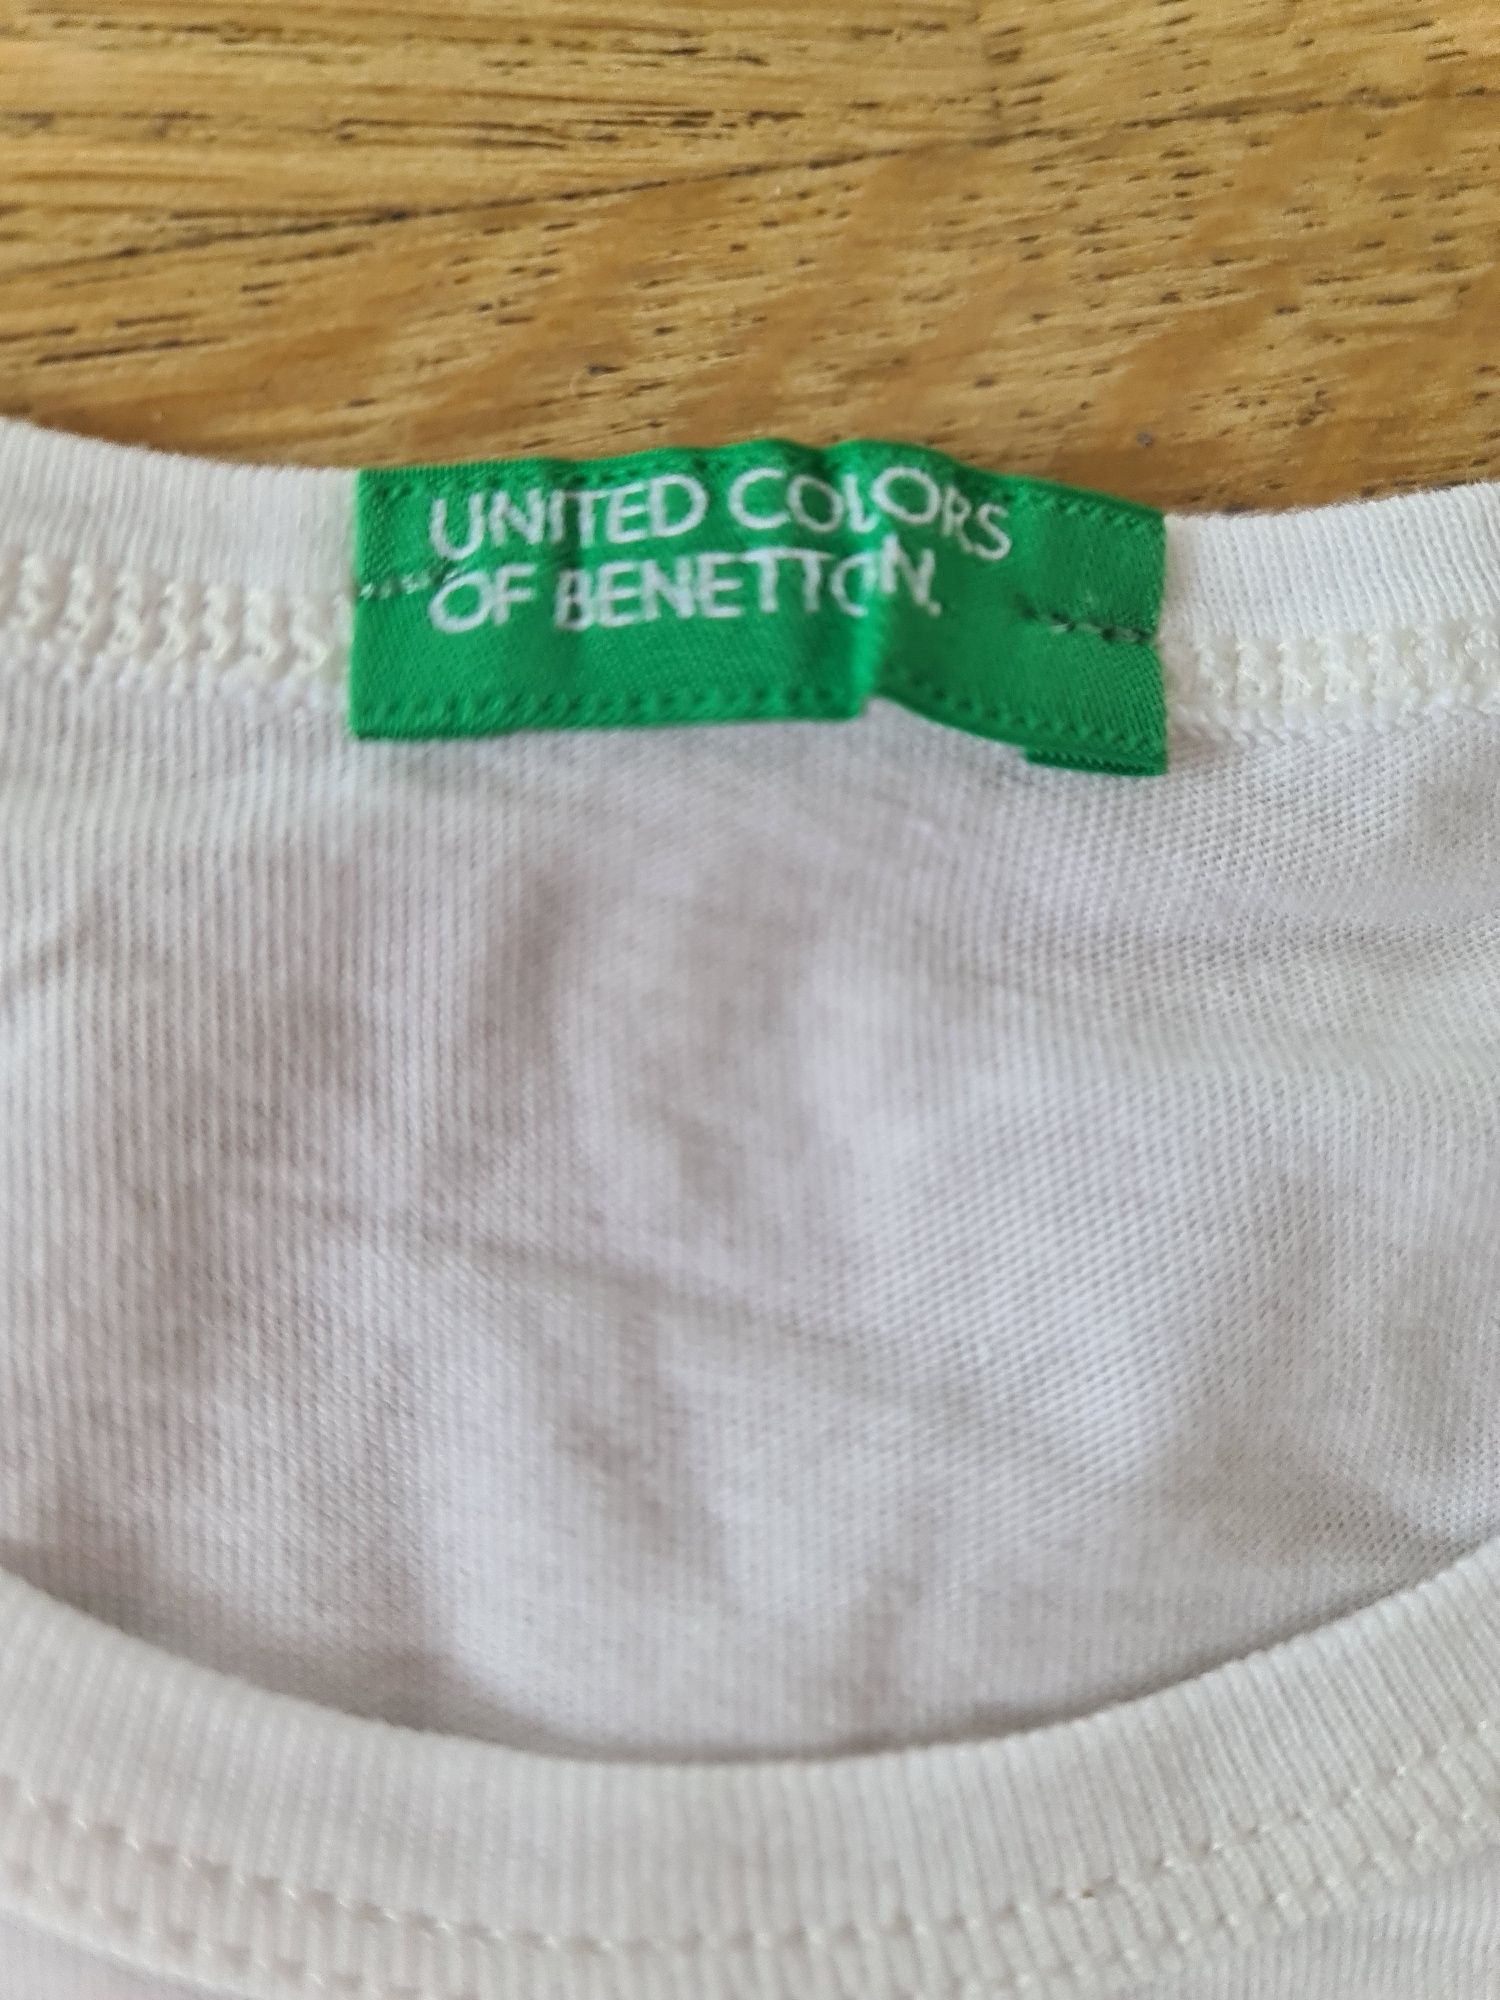 T-SHIRT biały longsleeve koszulka Benetton r150 złota aplikacja ozdoba